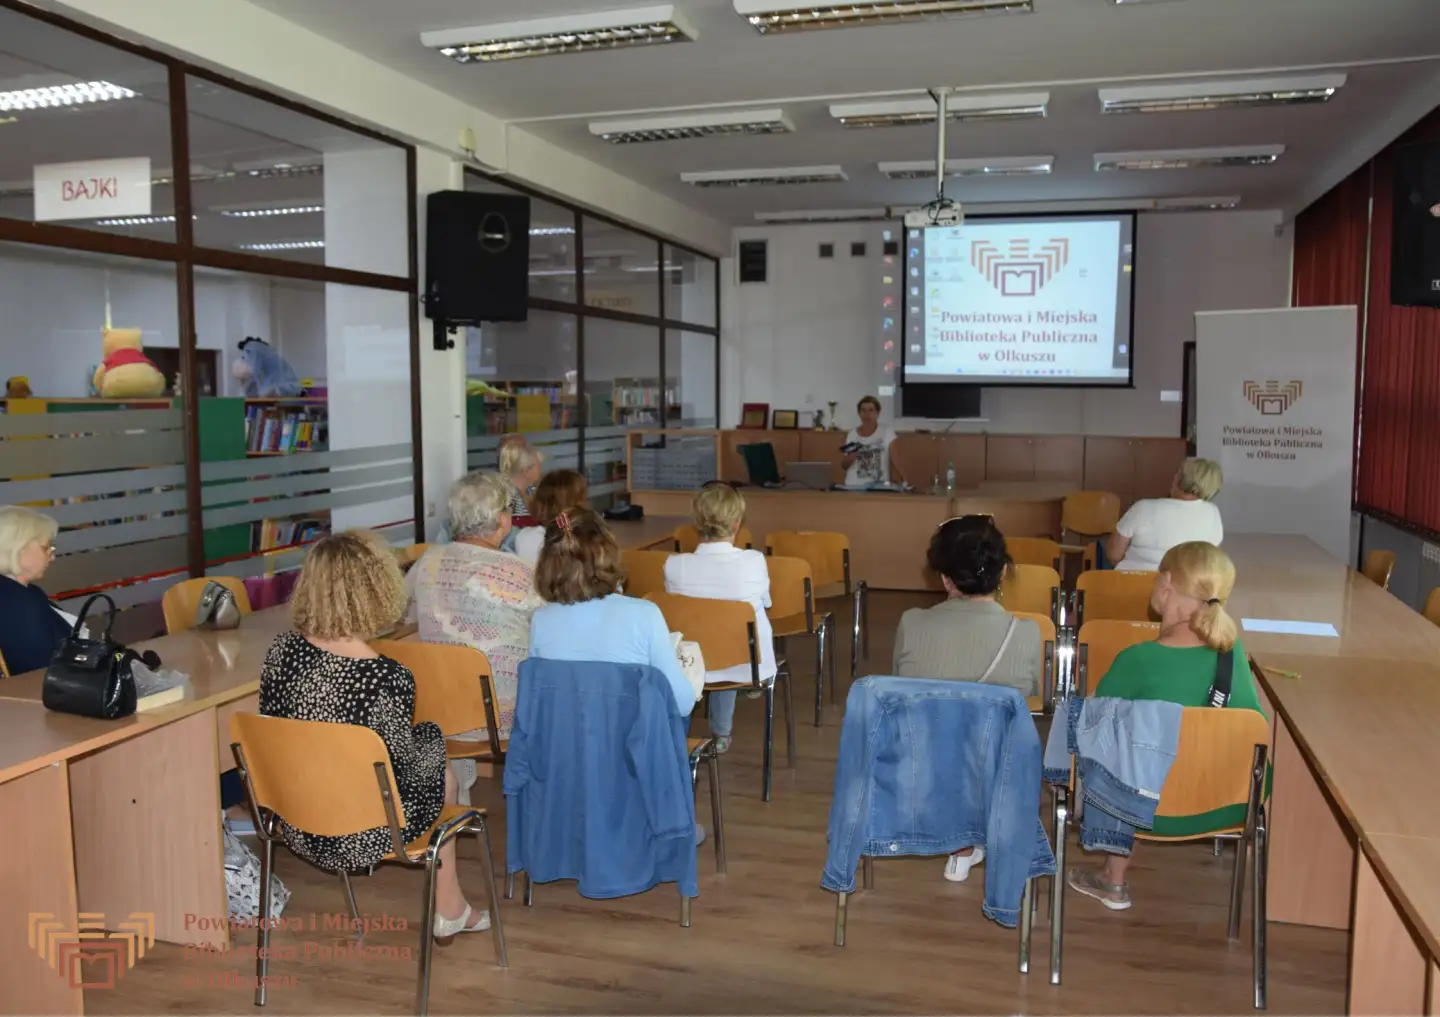 Grupa kobiet siędząca na krzesłach w sali konferencyjnej w trakcie prezentacji